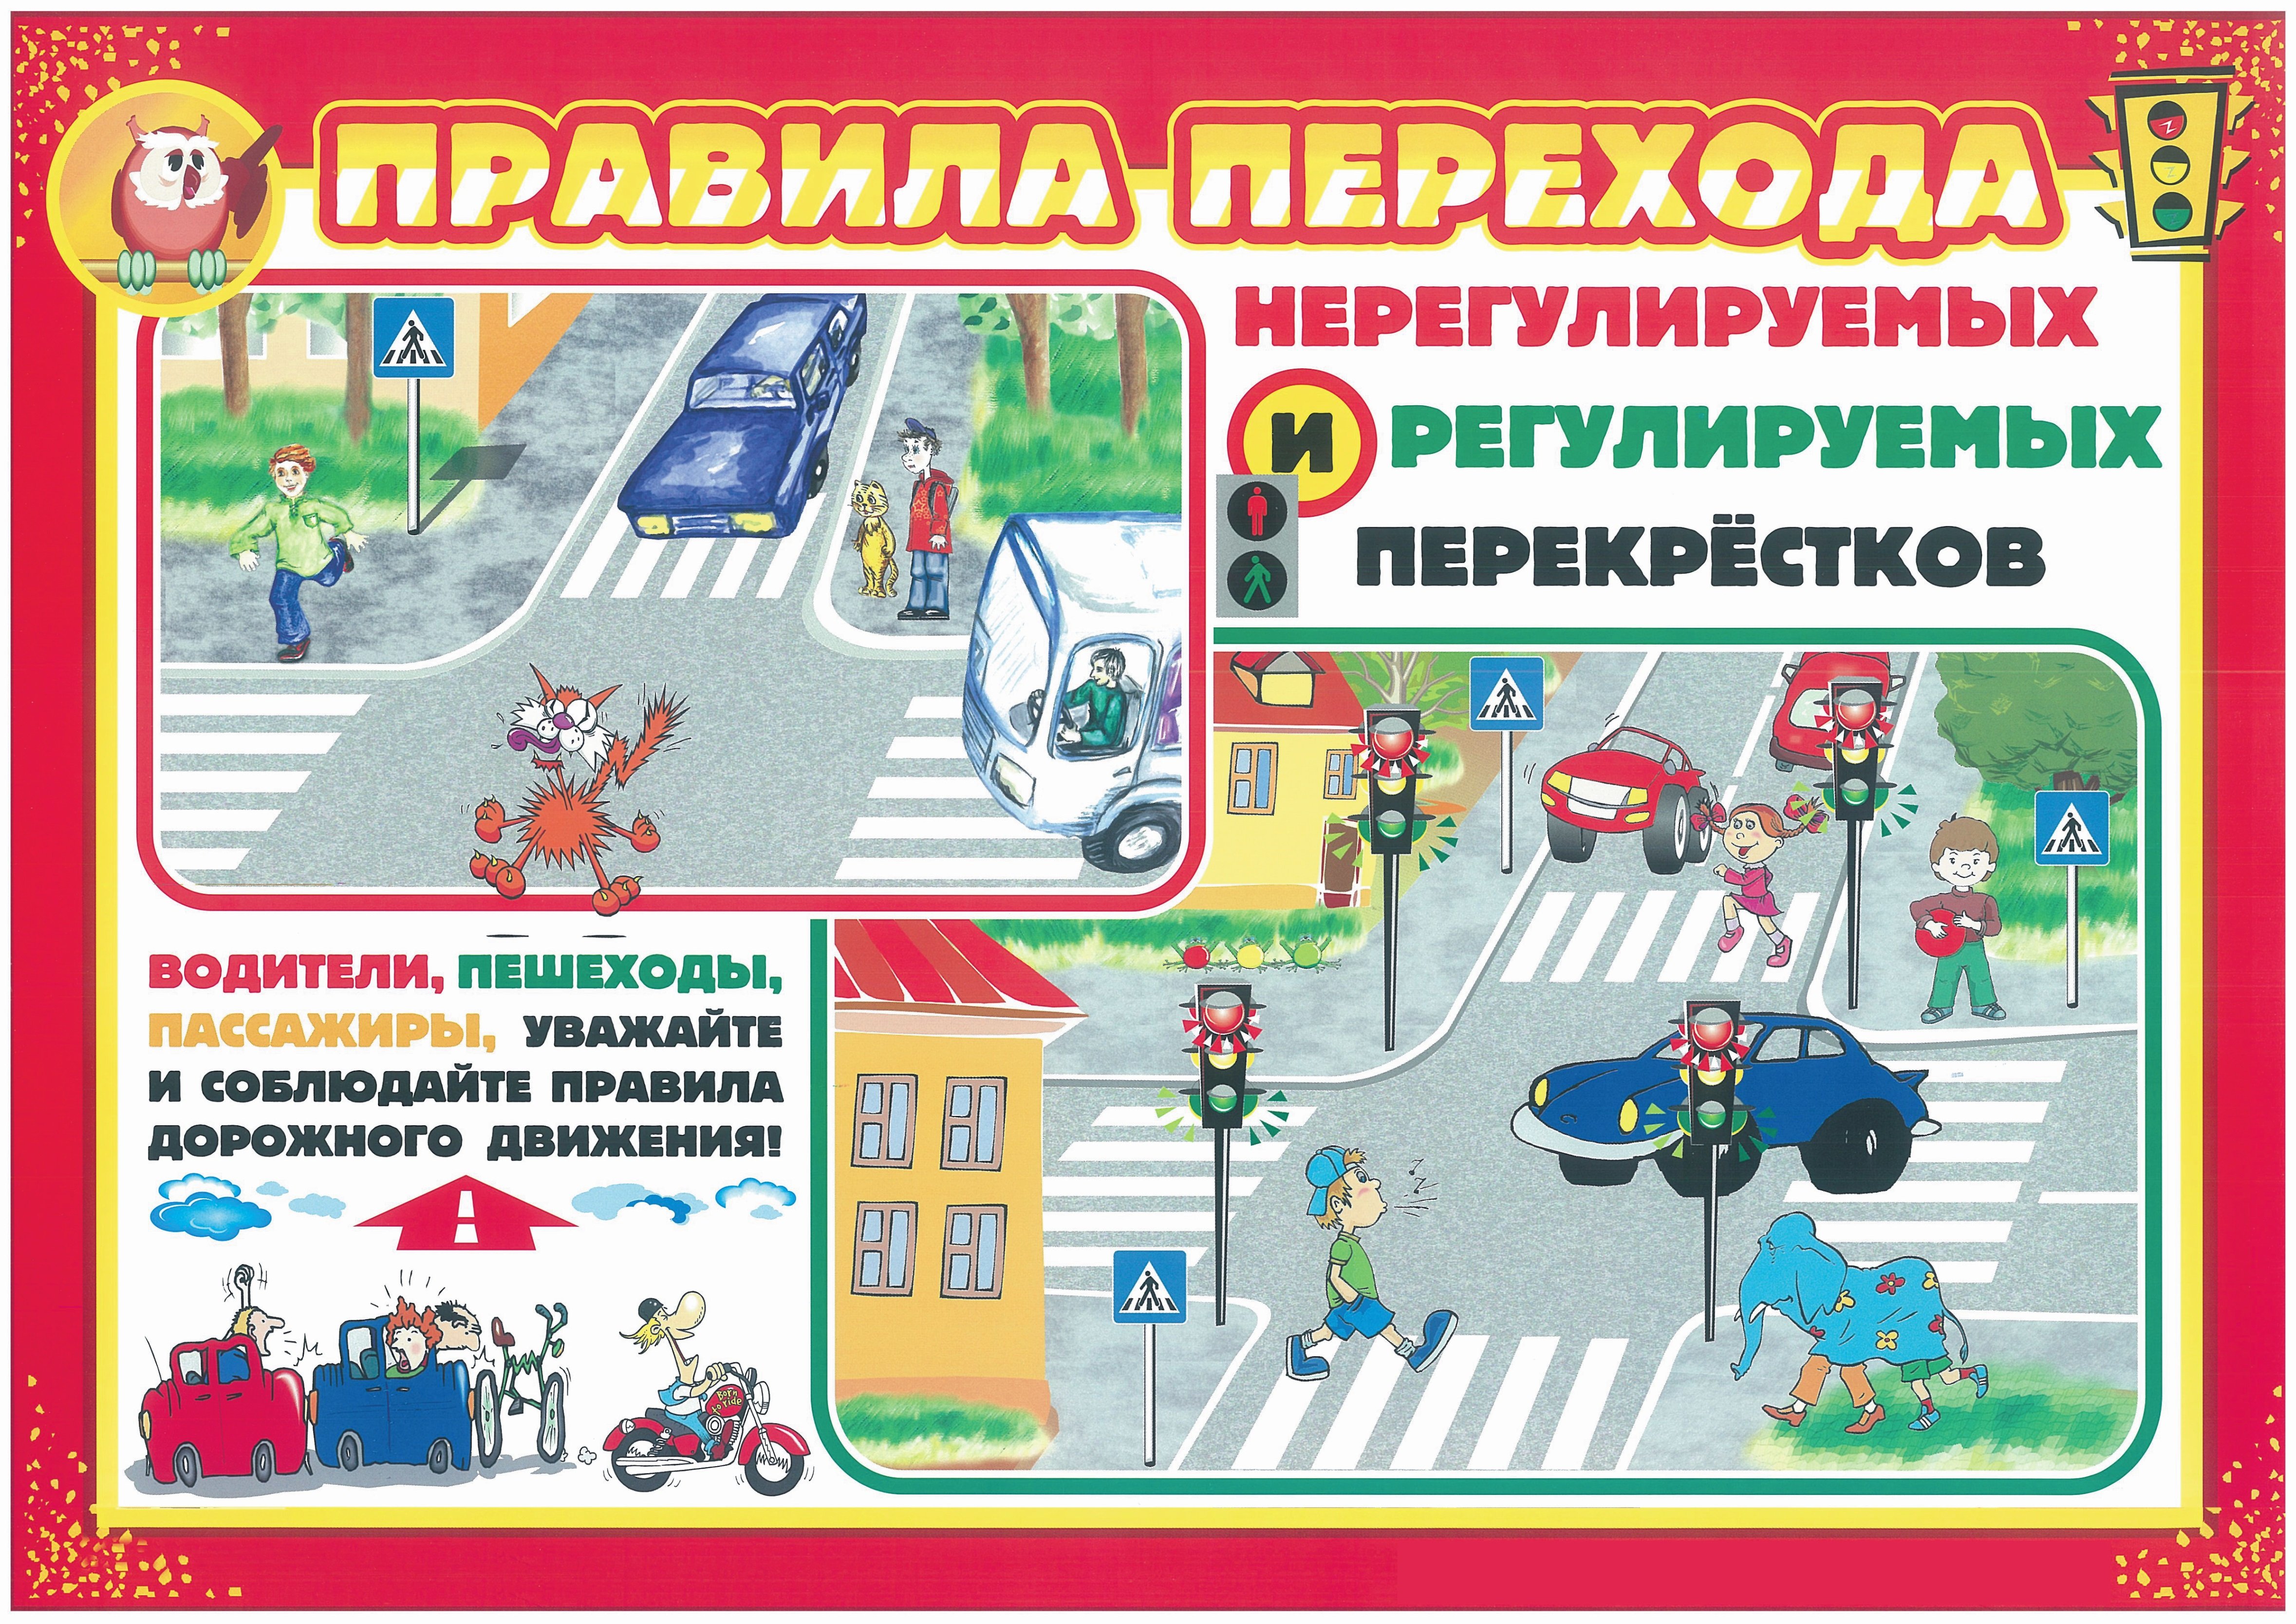 Пдд ц д е. Правила дорожного движения. Правила дорожного движения для детей. Безопасность на дороге для дошкольников. Плакат по правилам дорожного движения.